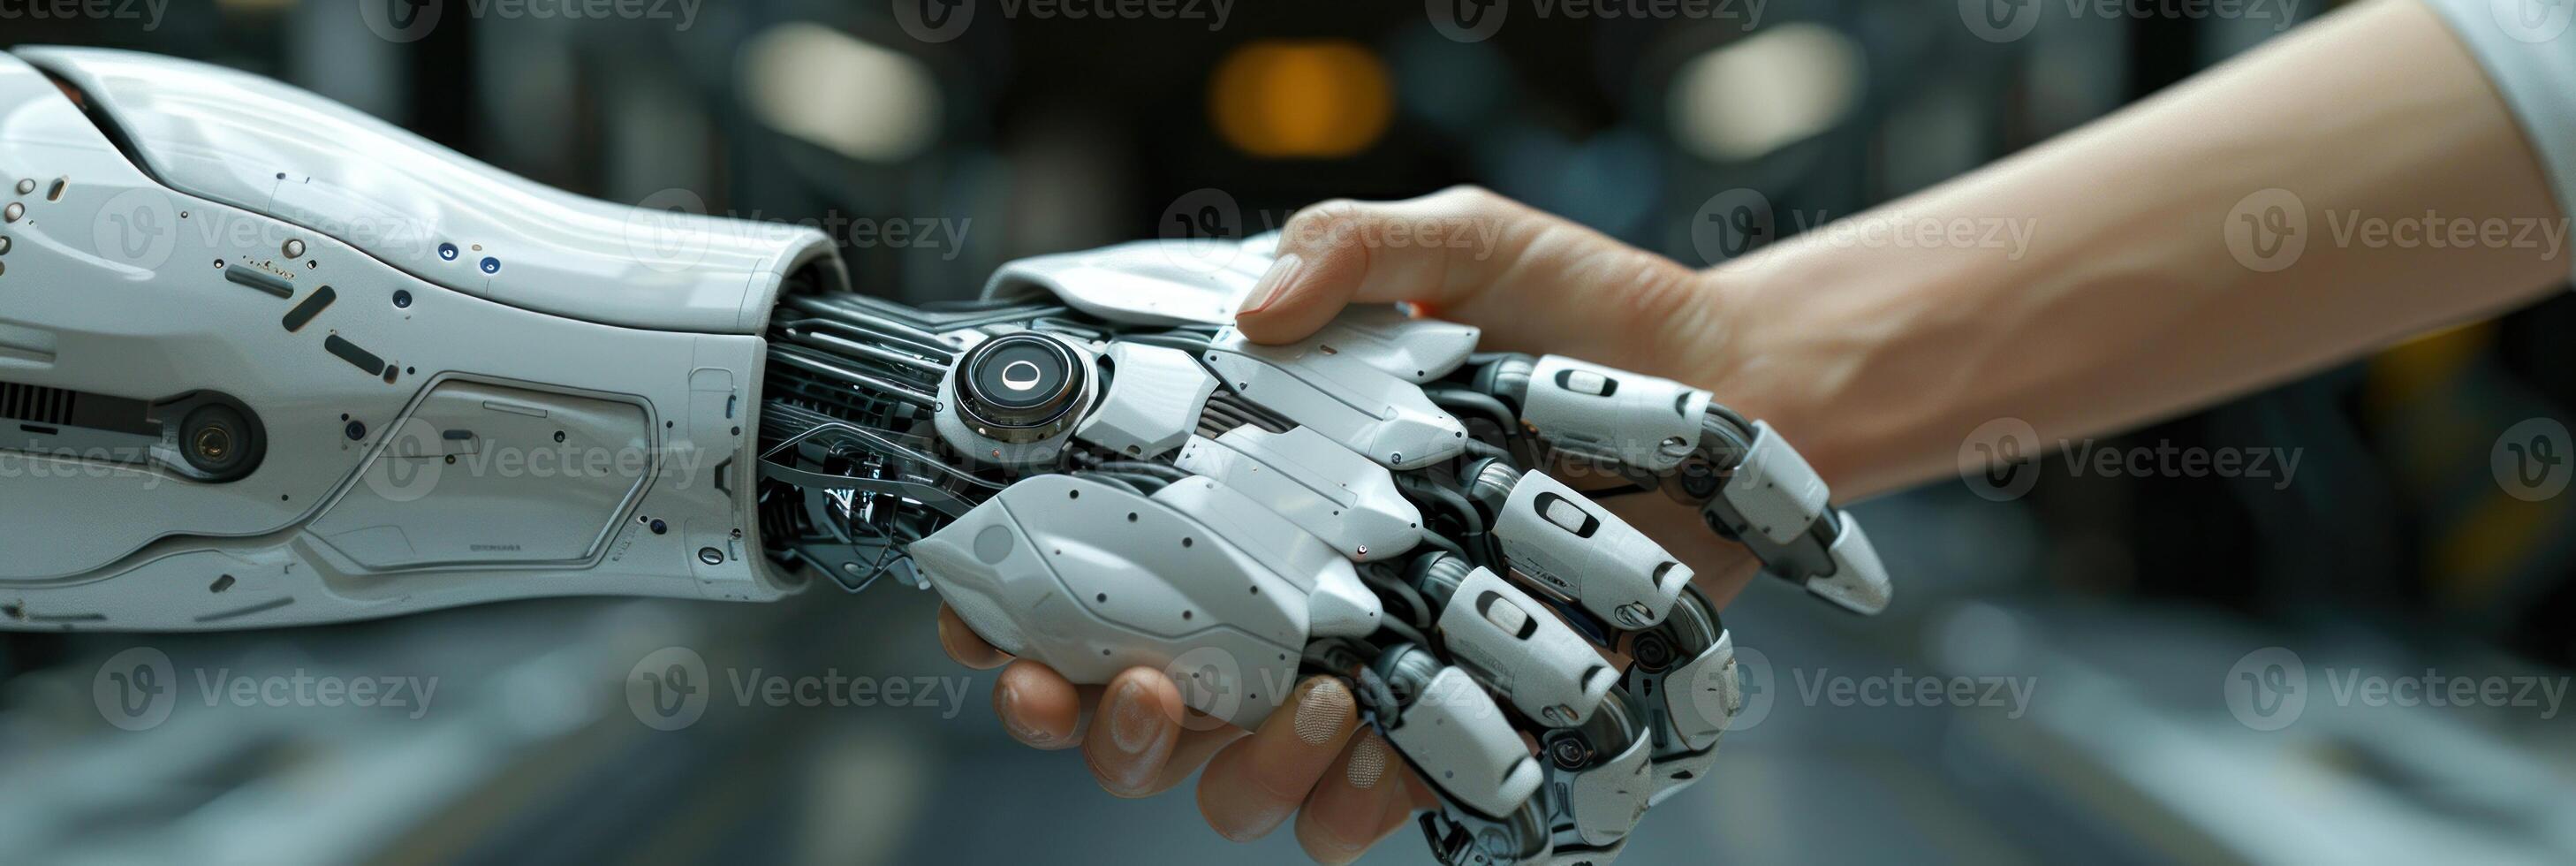 een persoon Holding een robot hand- binnen een kamer foto